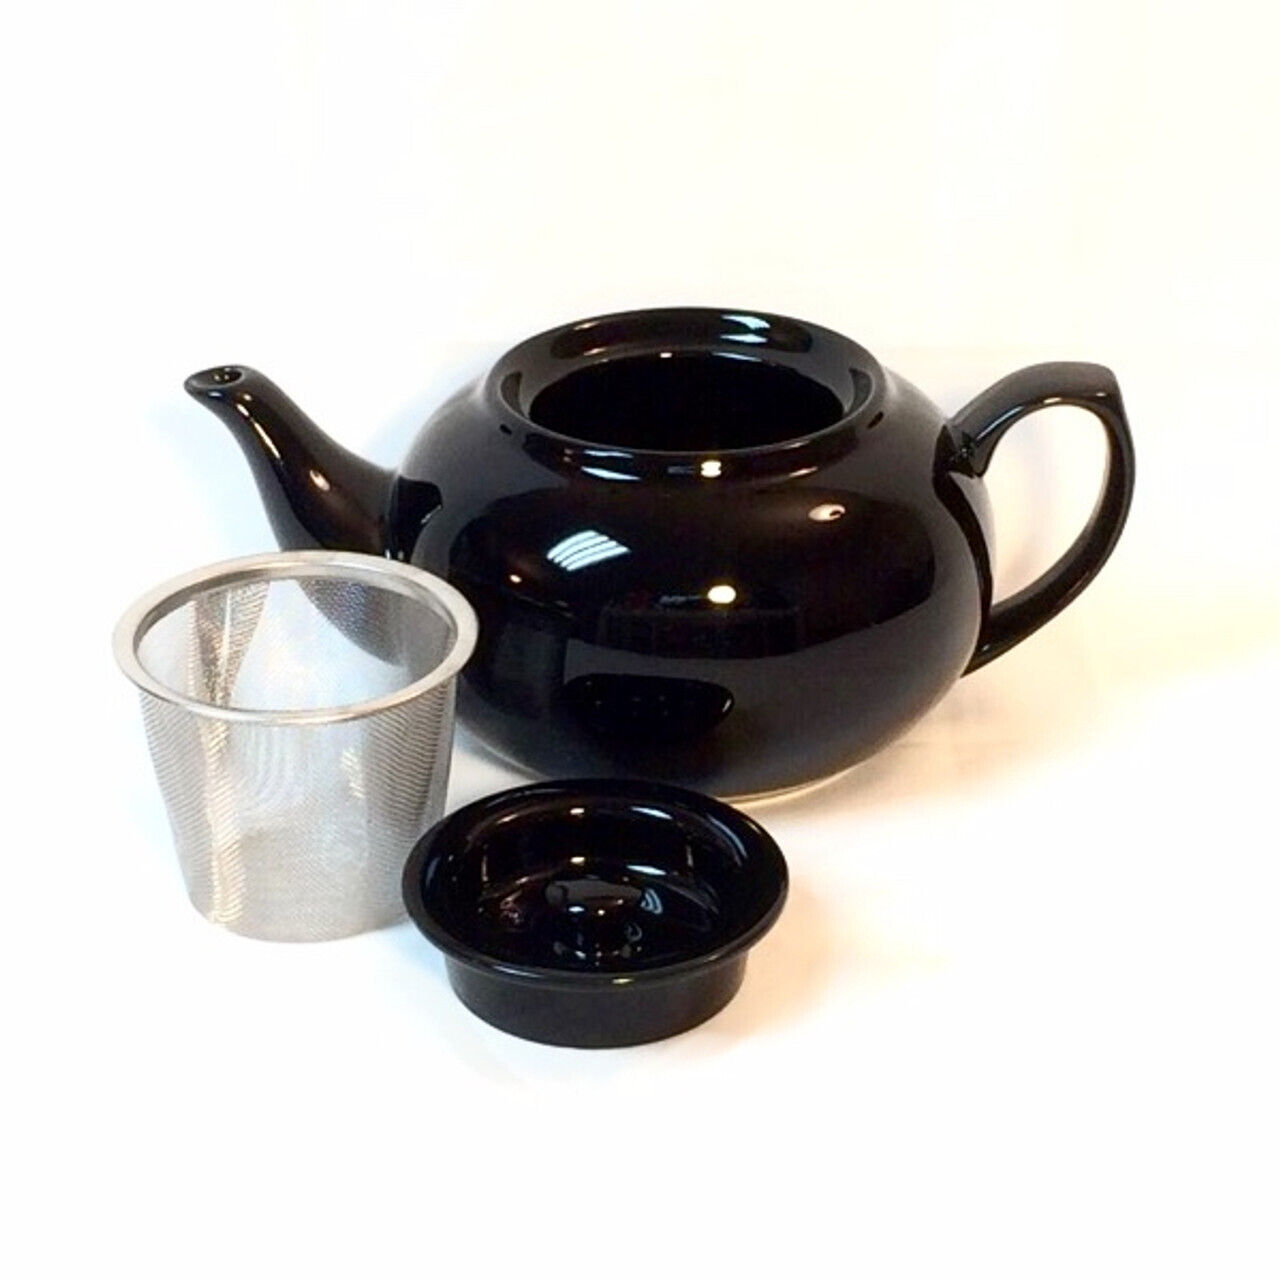 Ceramic Teapot (Black) - PersonaliTEA New Teaware Filter Basket 